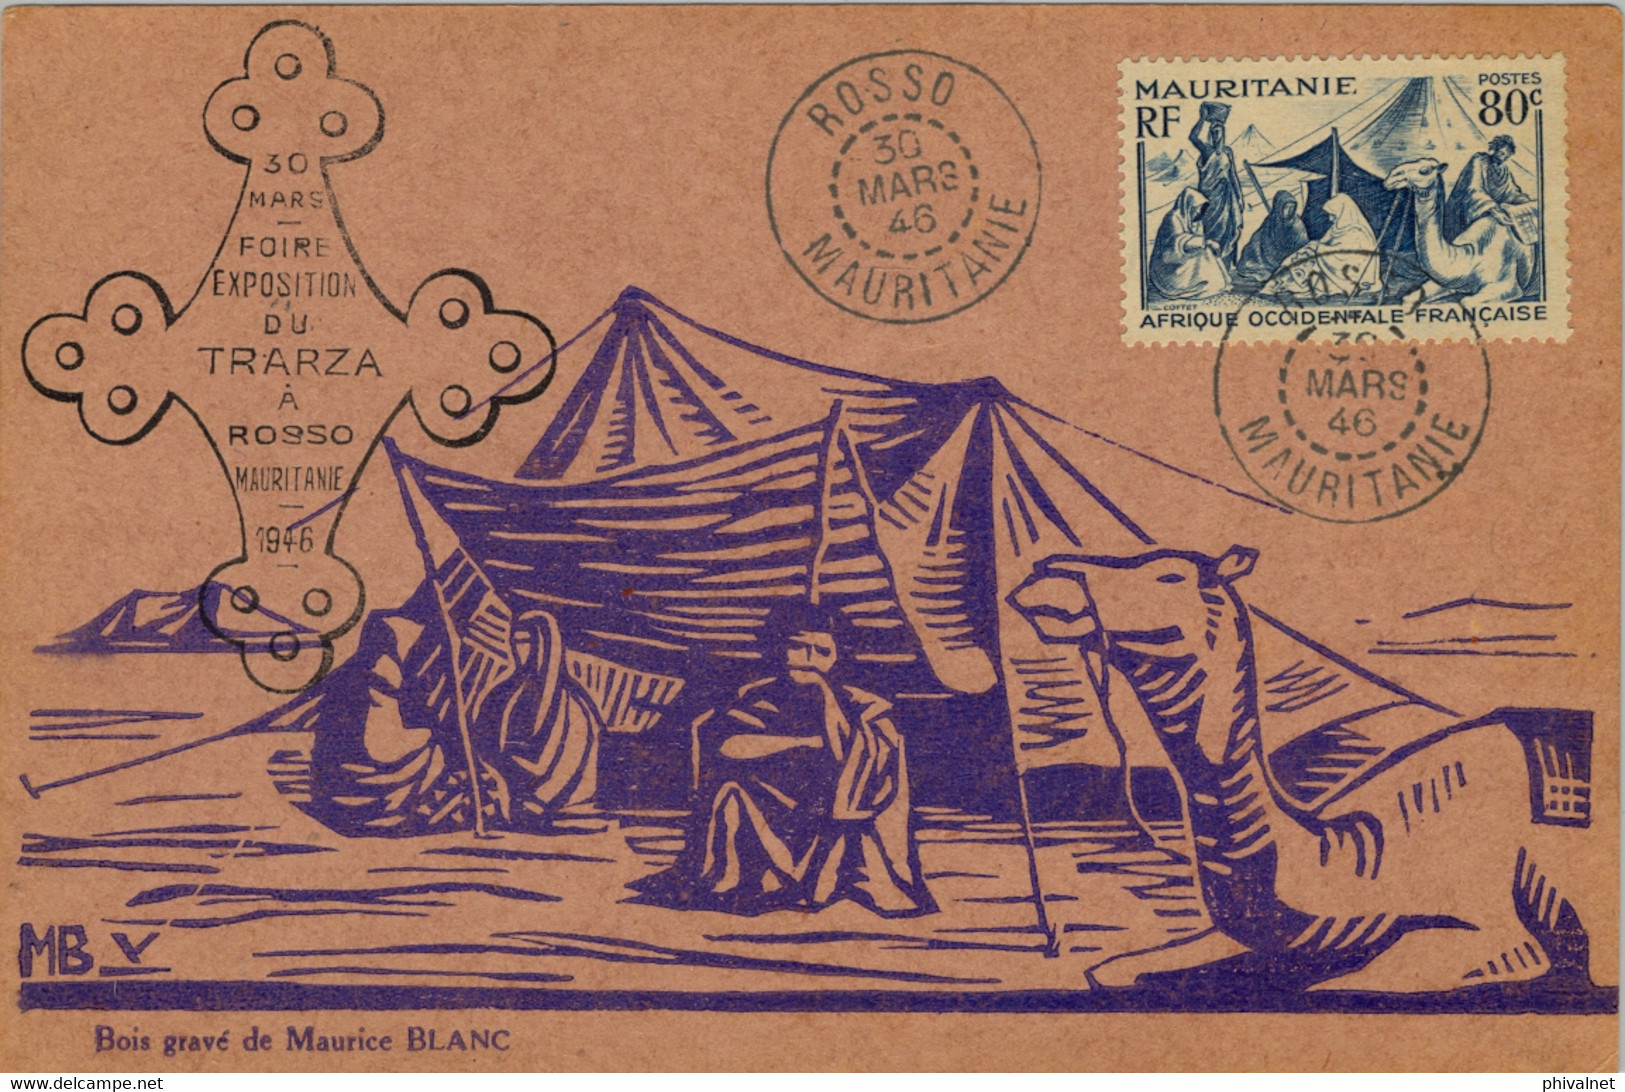 1946 MAURITANIE , FOIRE EXPOSITION DU TRARZA A ROSSO , MAT. DE ROSSO , FRANQUEO 80 CTS. - Cartas & Documentos